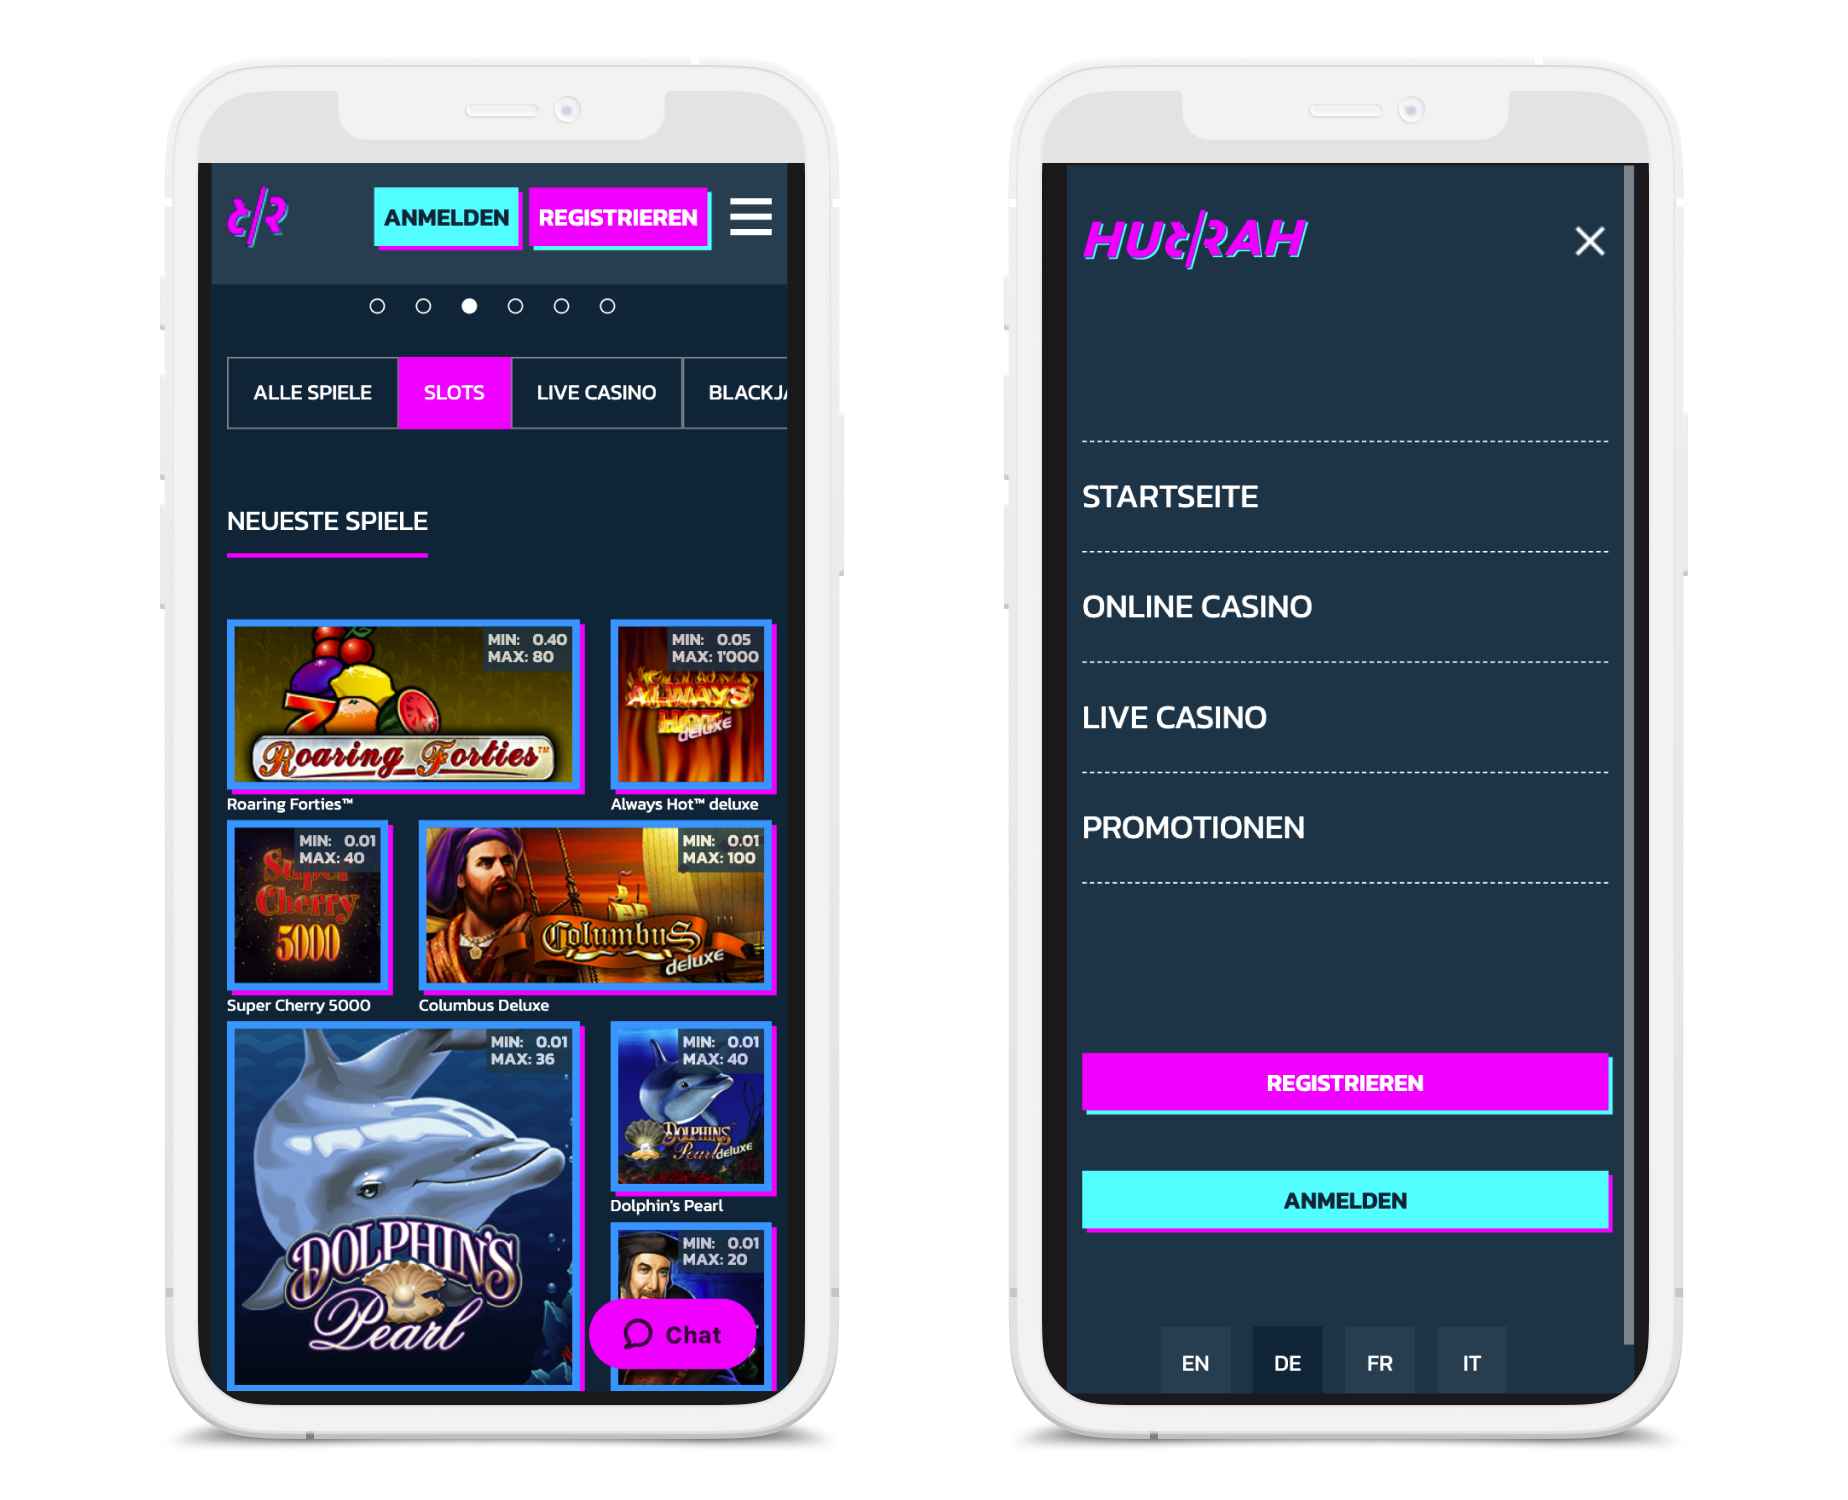 Hurrah Casino Mobile App